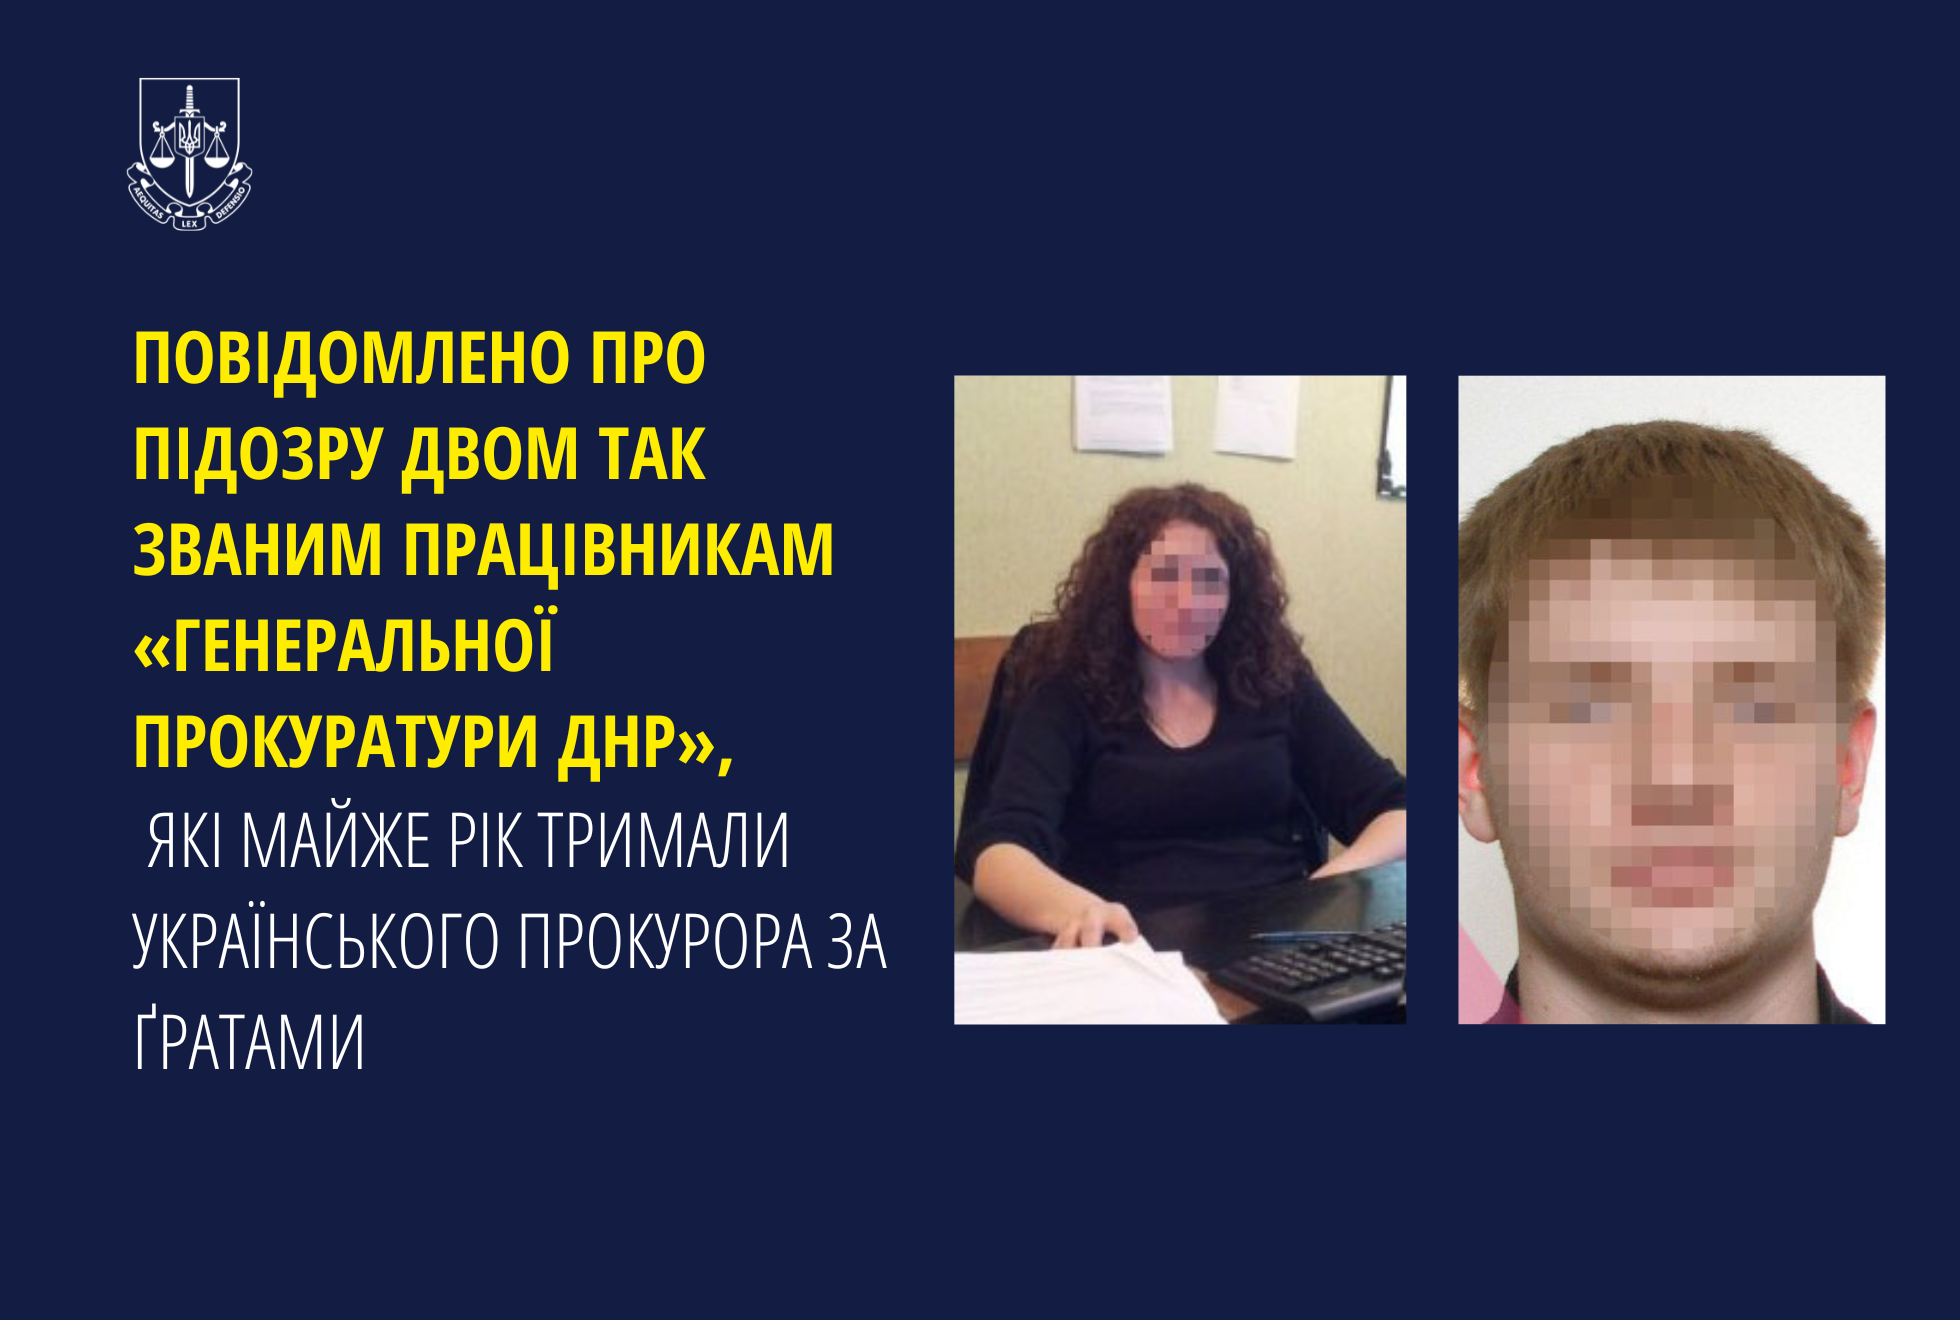 Повідомлено про підозру двом так званим працівникам «генеральної прокуратури днр», які майже рік тримали українського прокурора за ґратами